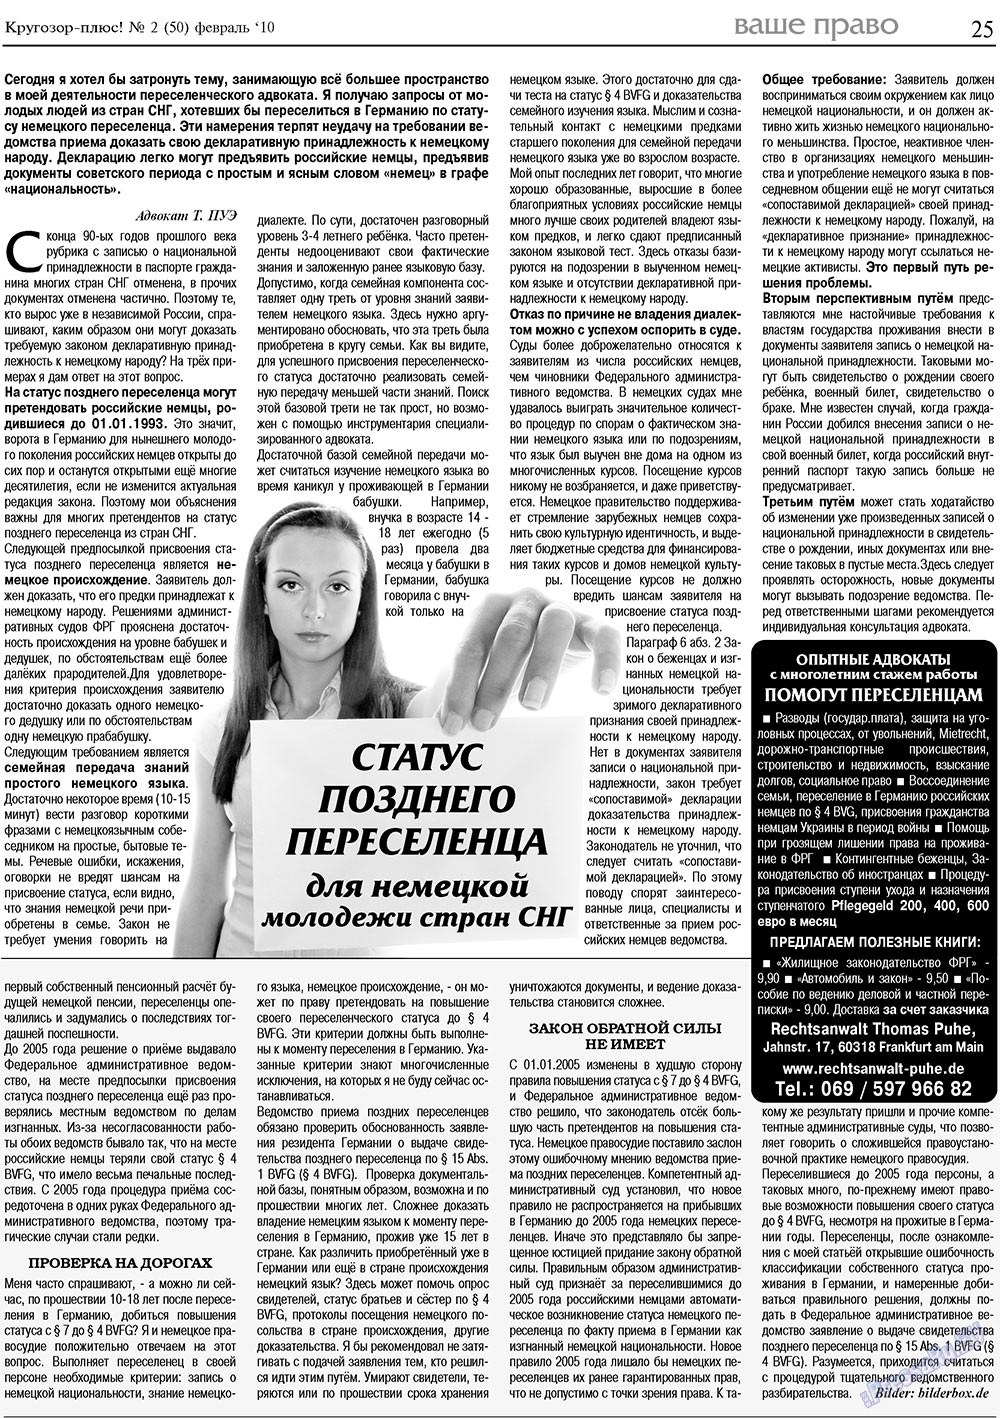 Кругозор плюс!, газета. 2010 №2 стр.25